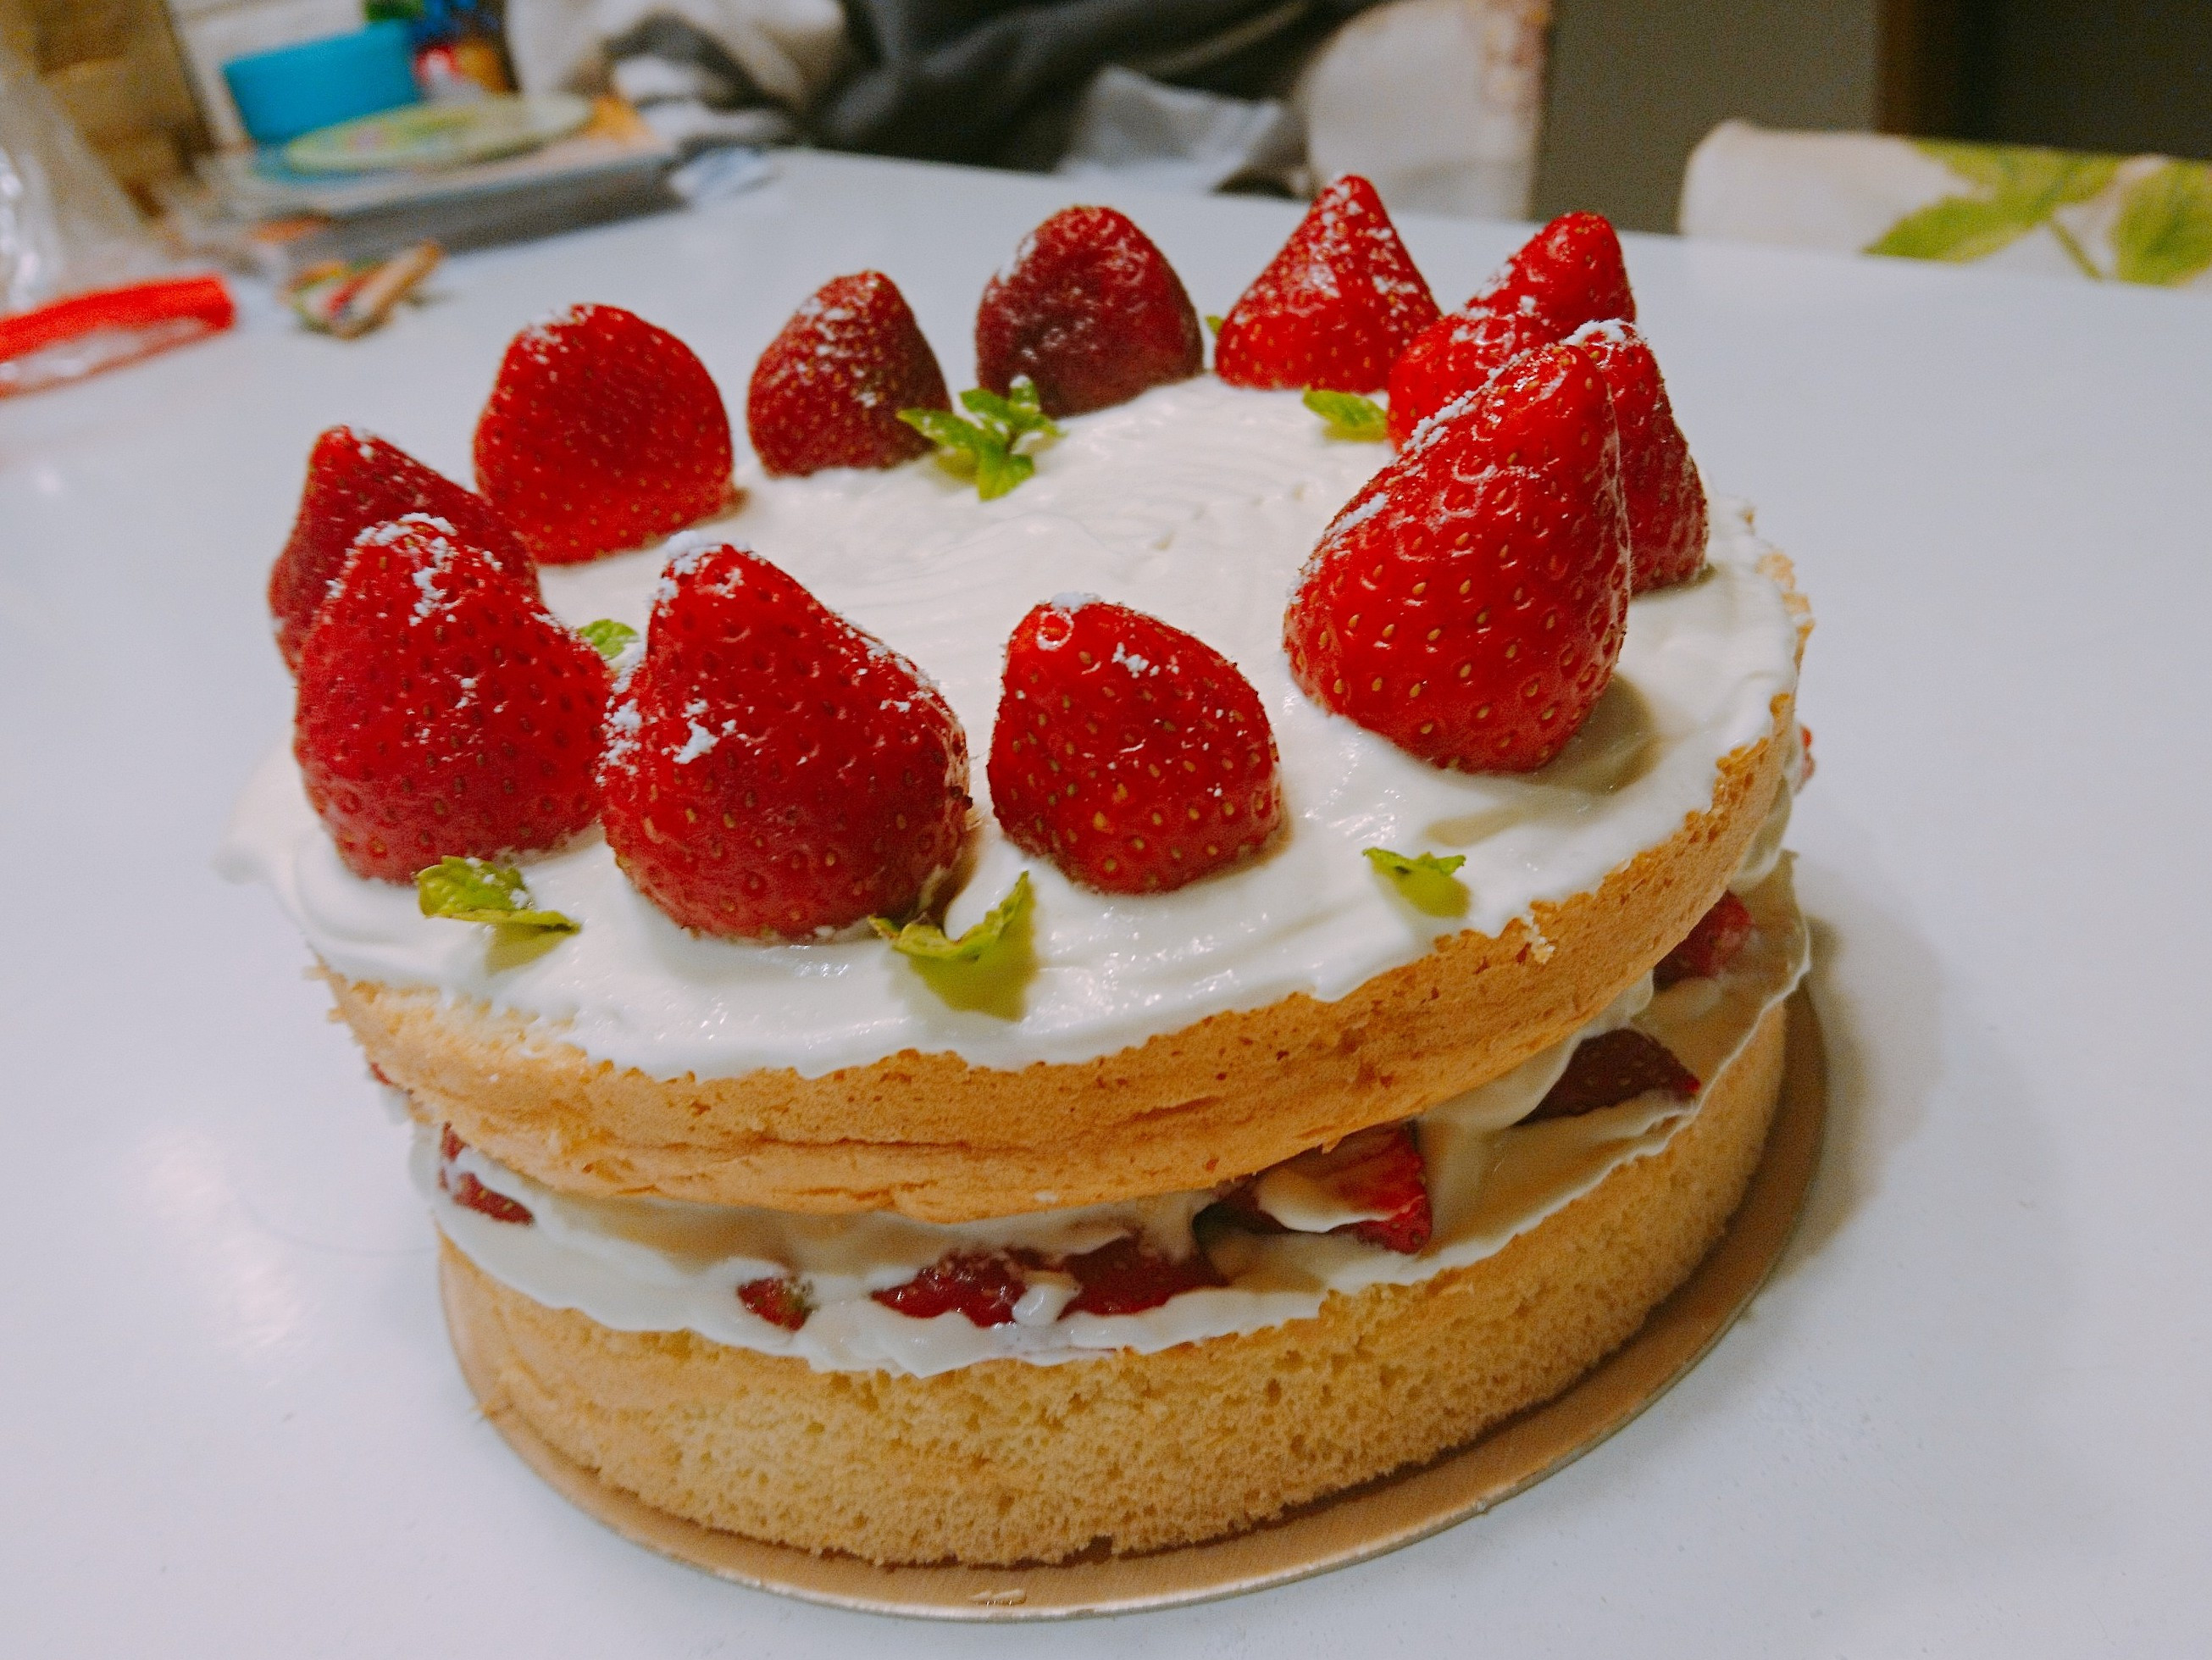 爱厨房的幸福之味: 草莓戚风蛋糕 Stawberry Chiffon Cake